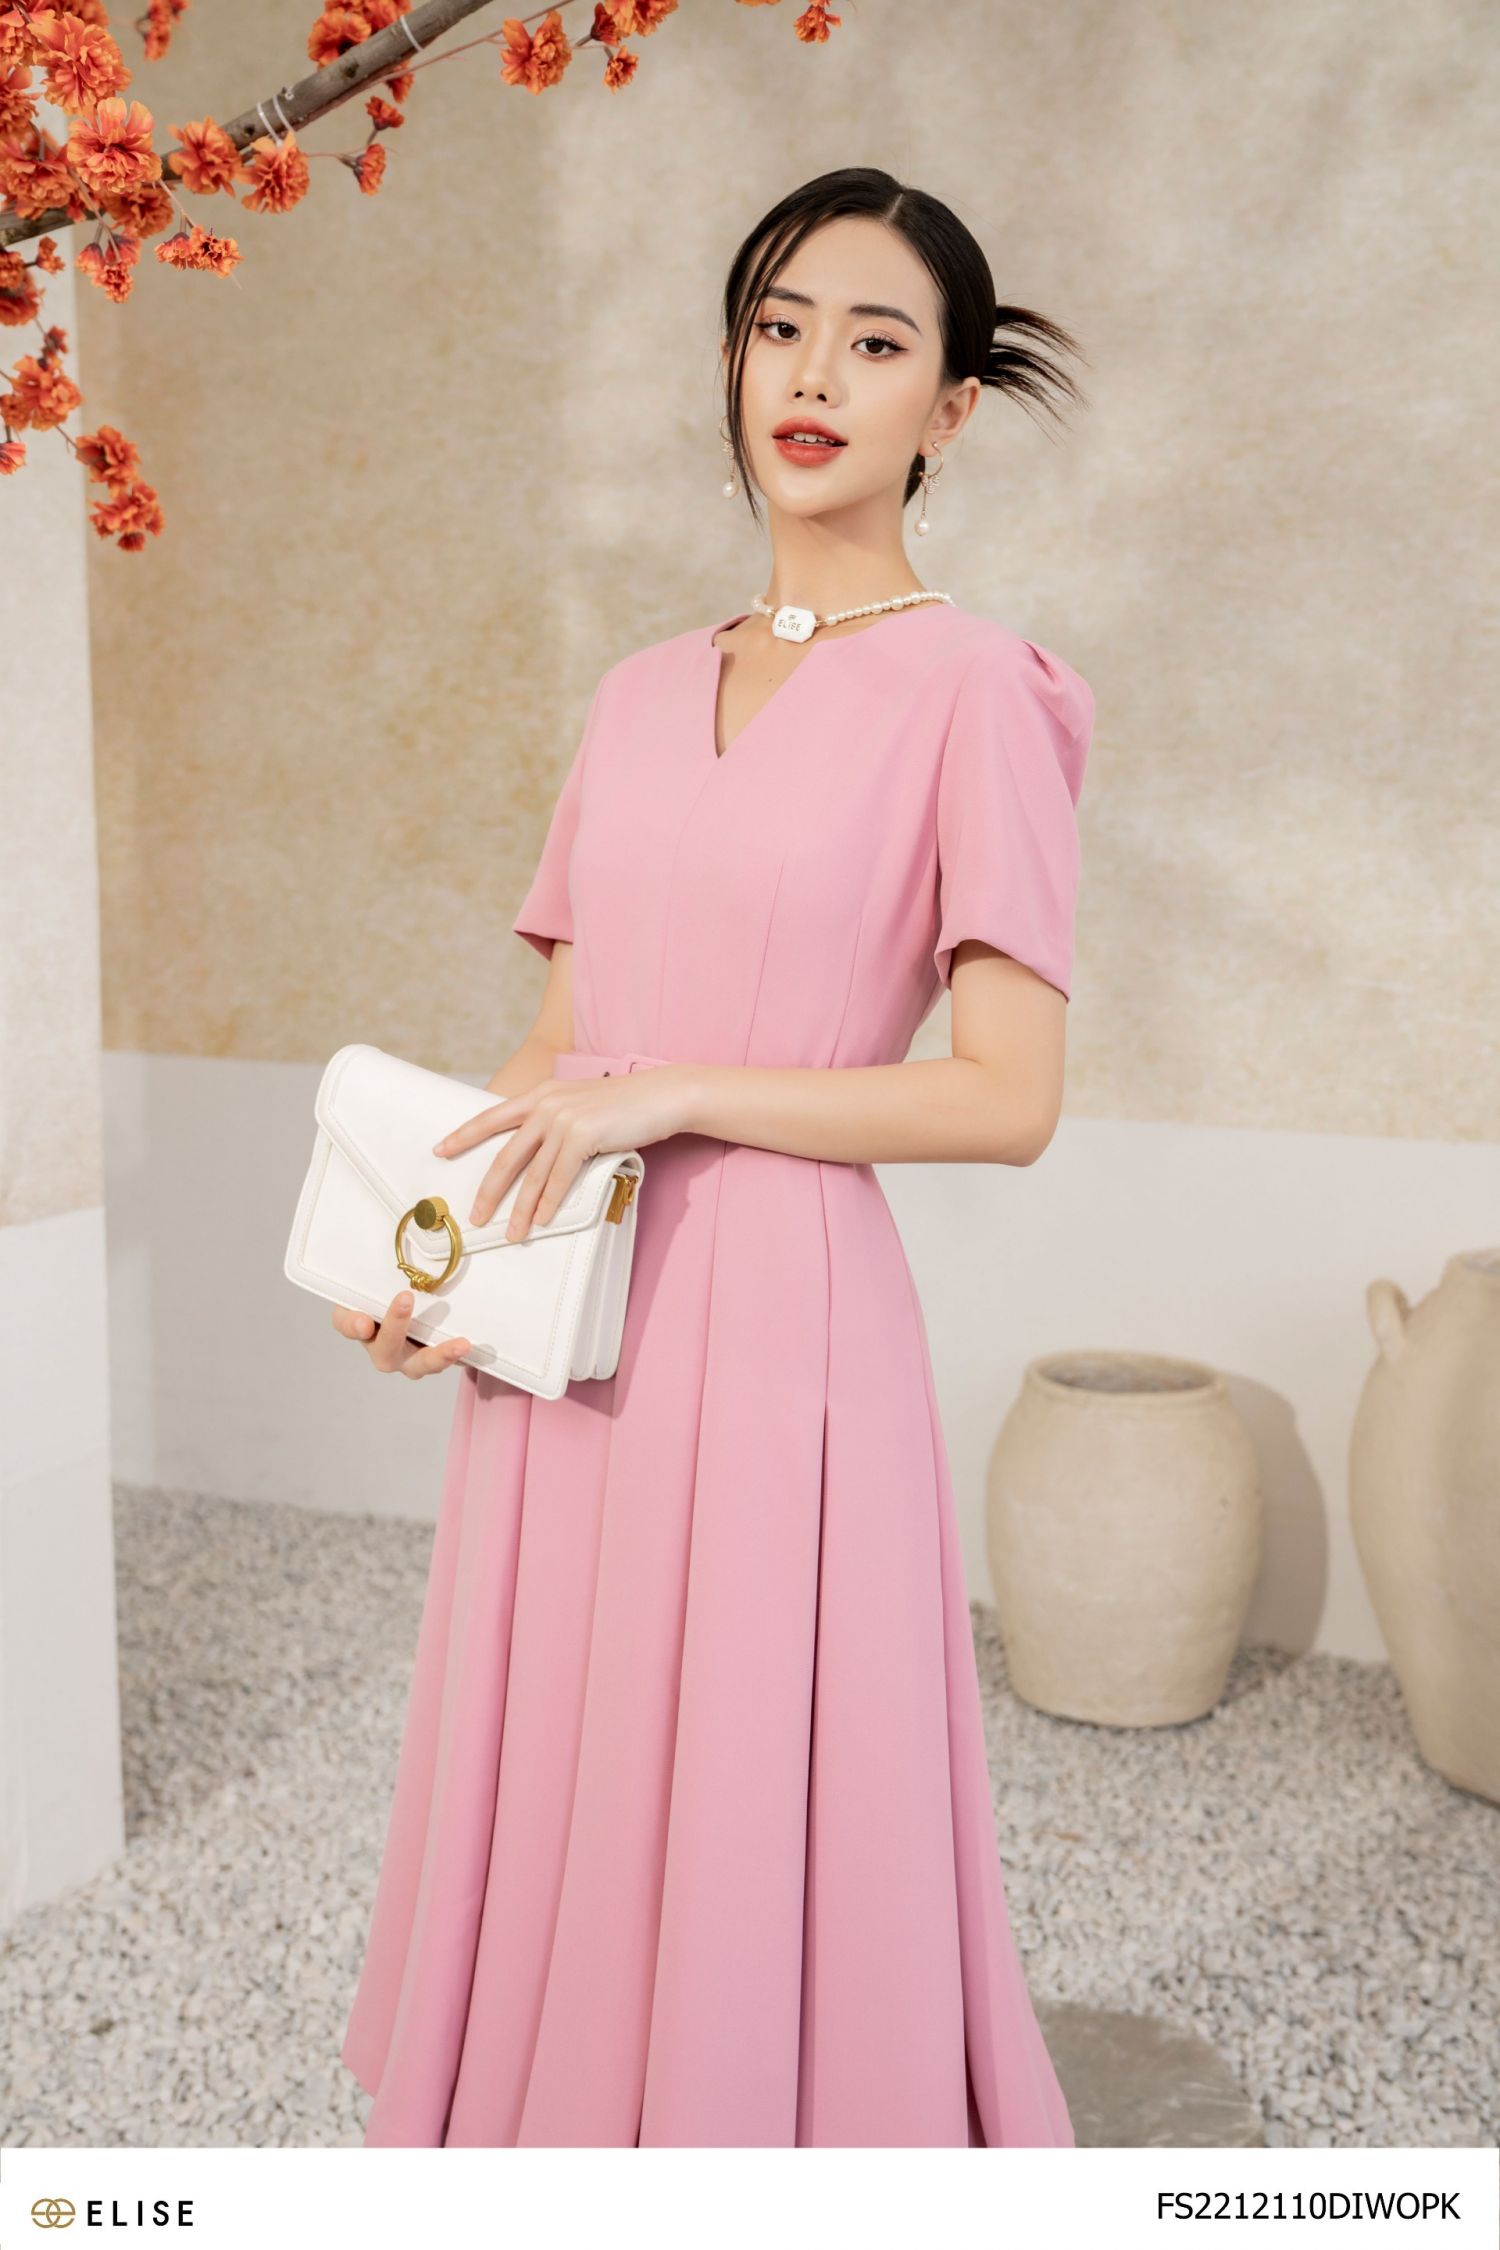 Chân váy hồng kết hợp với áo màu gì để giảm độ sến súa?